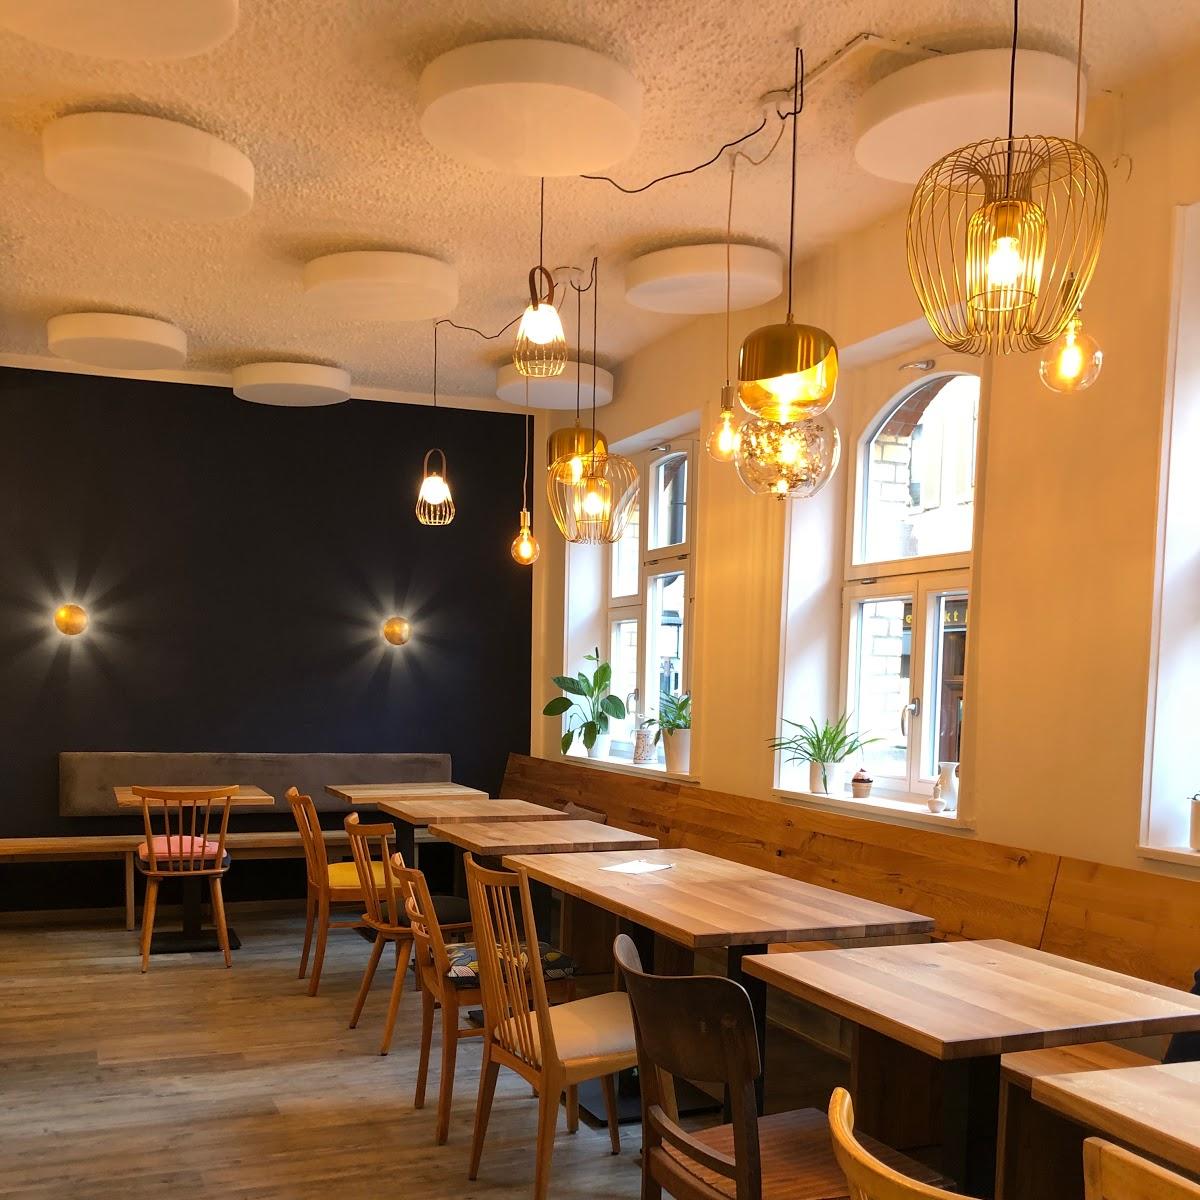 Restaurant "Fräulein Margot - Café in der Goldenen Biene" in Esslingen am Neckar